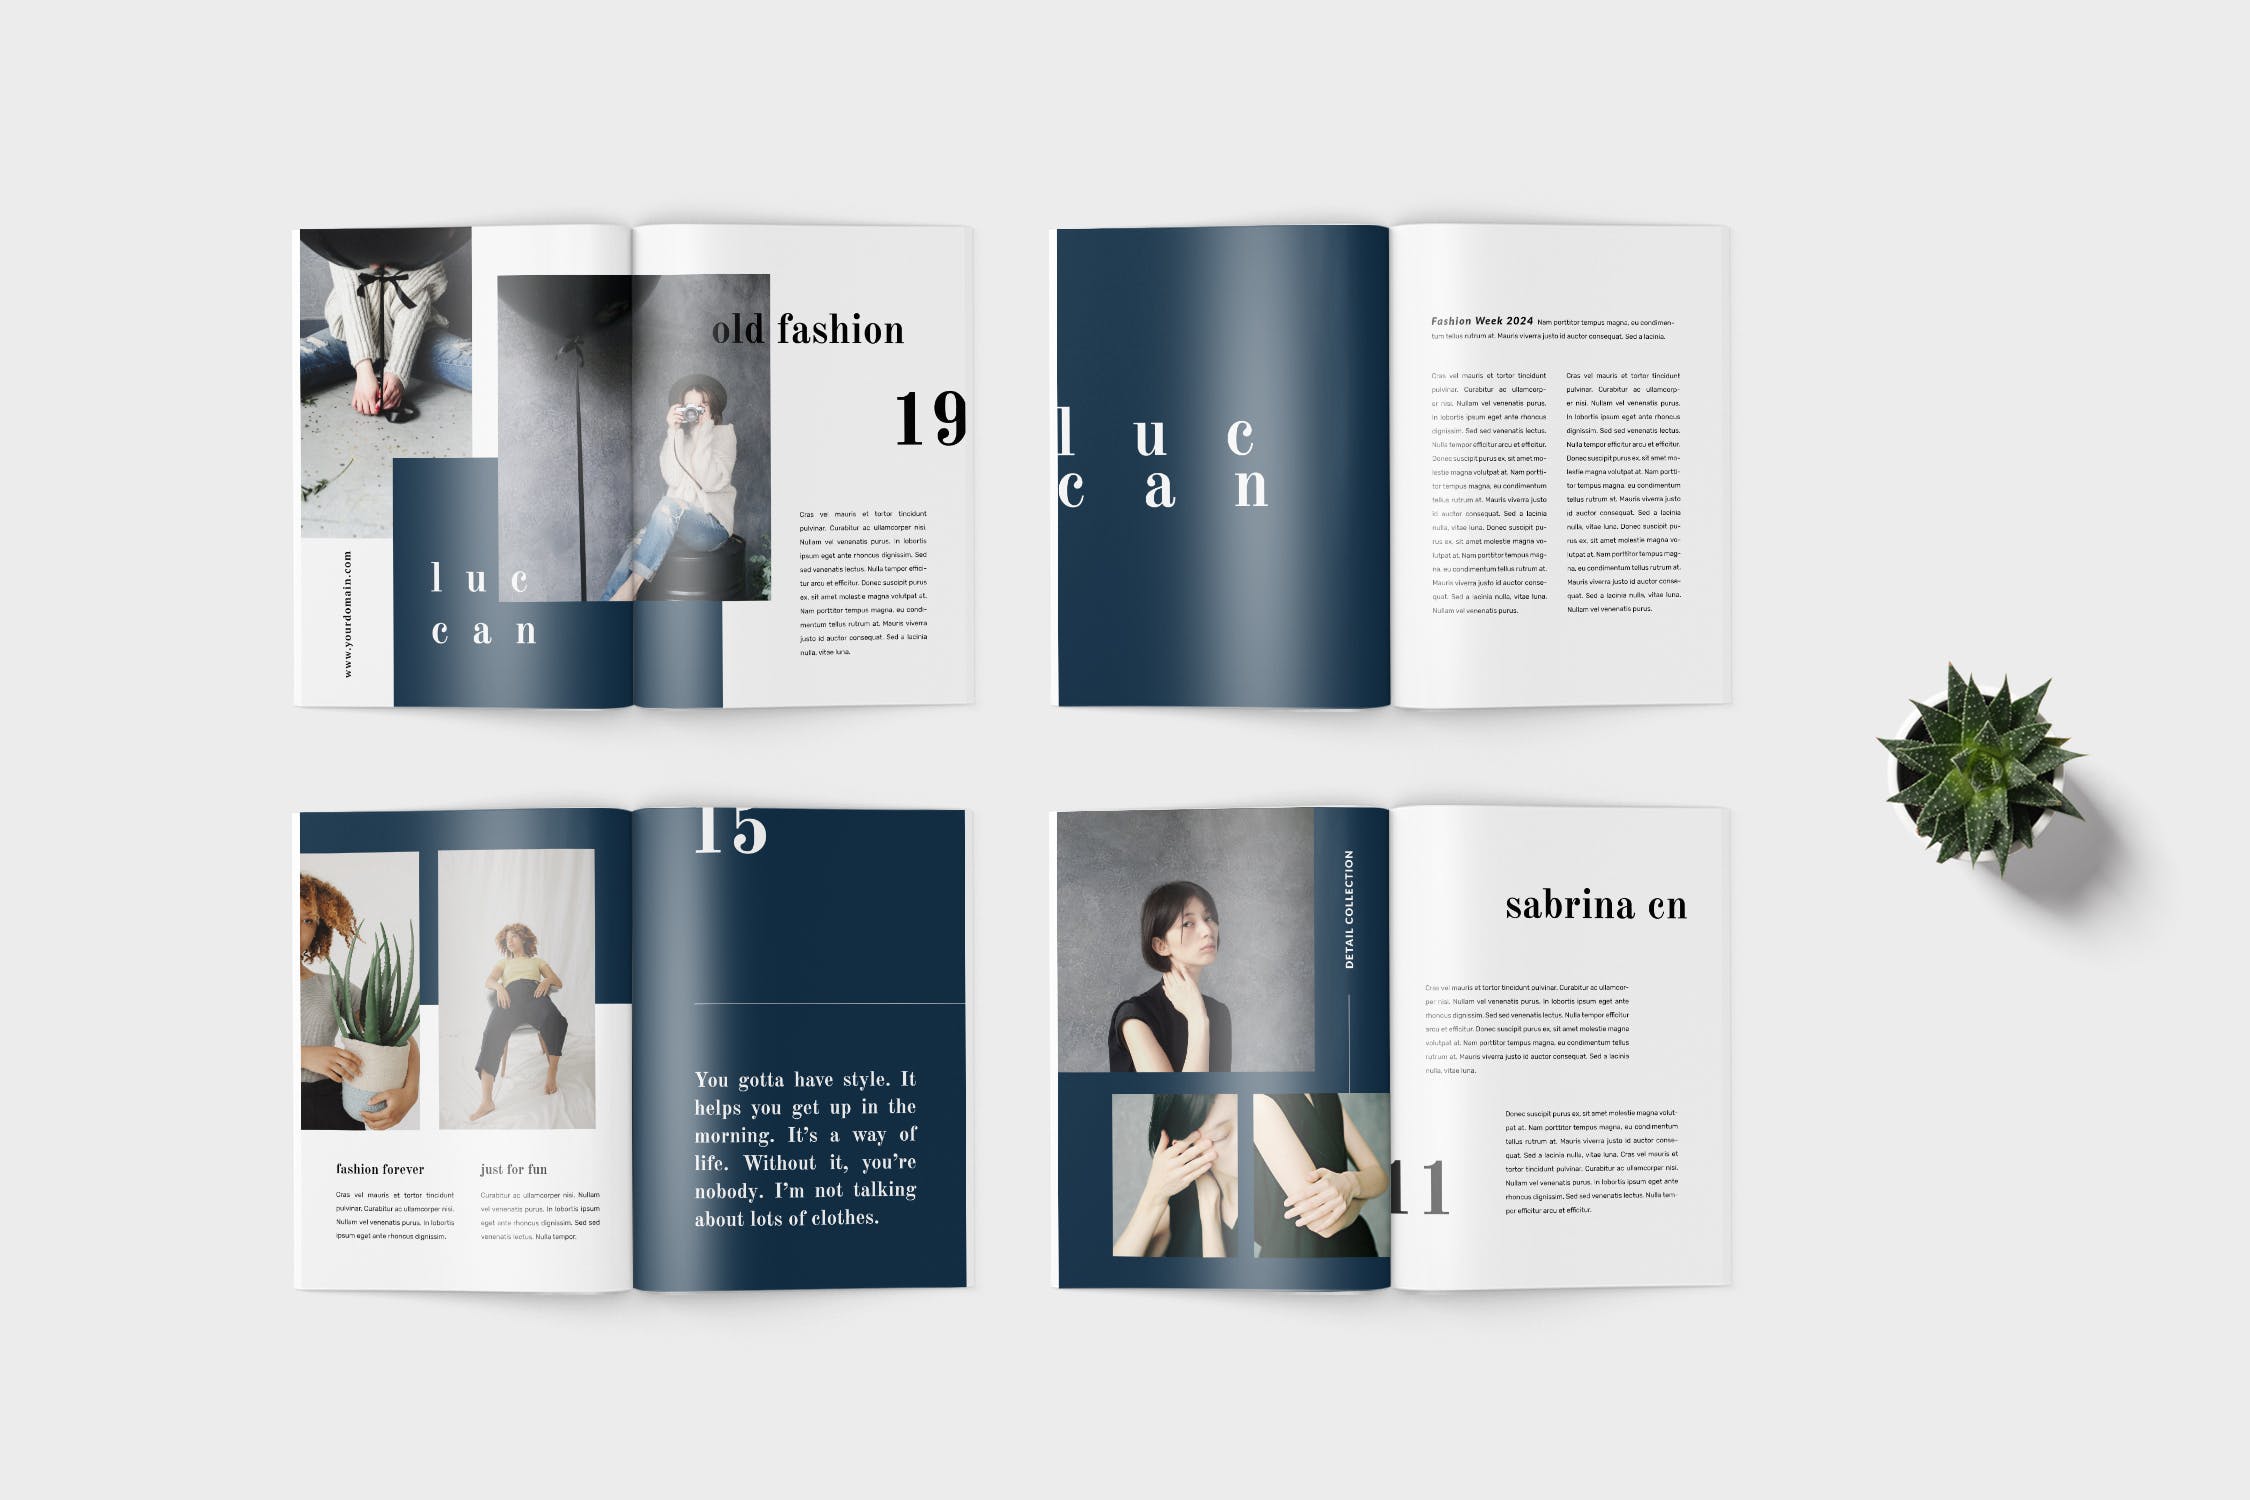 高端女性服装品牌产品16设计网精选目录设计模板 Luccan Fashion Lookbook Catalogue插图(3)